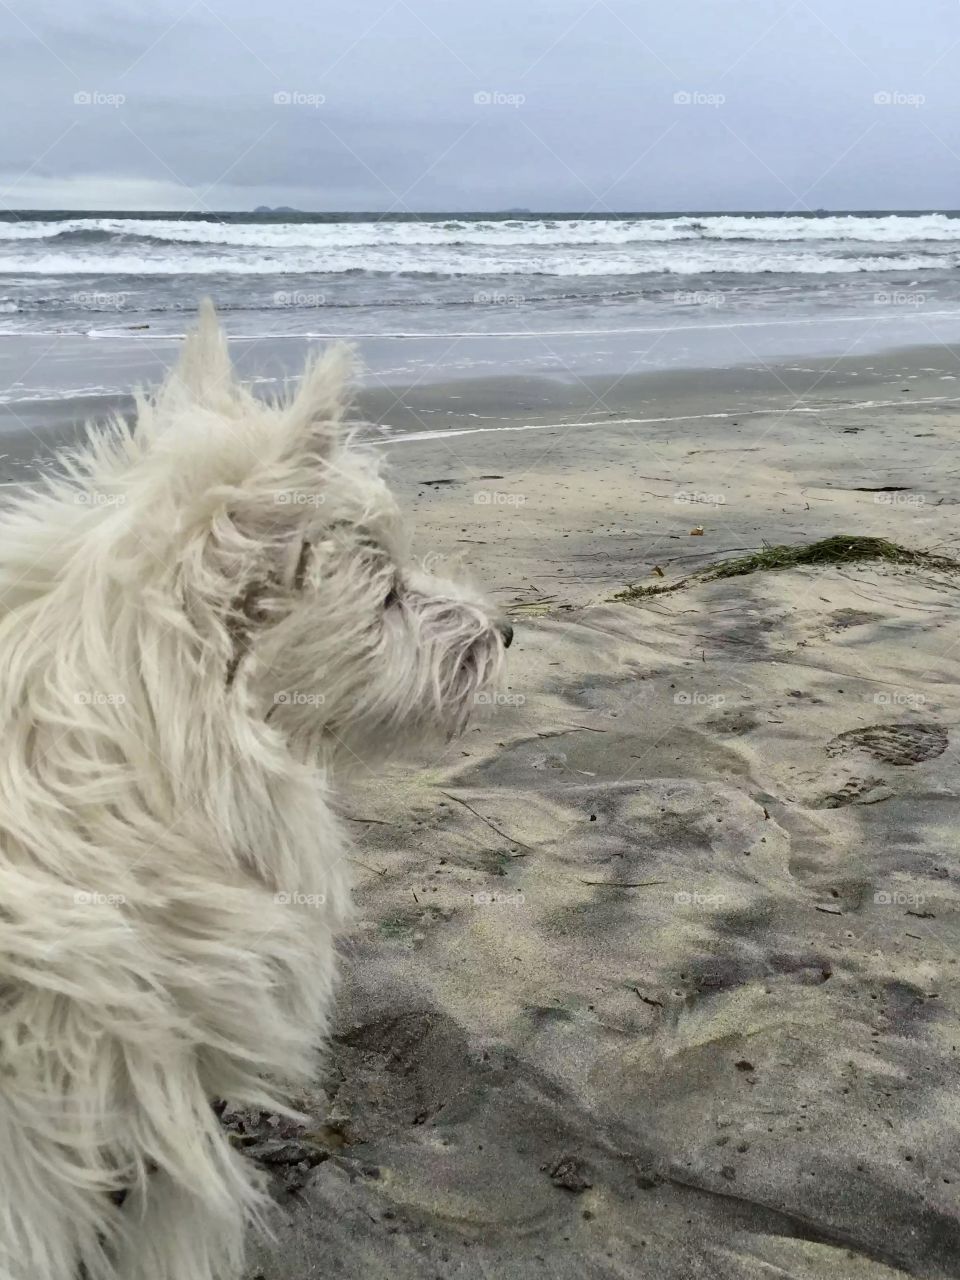 My dog at dog beach